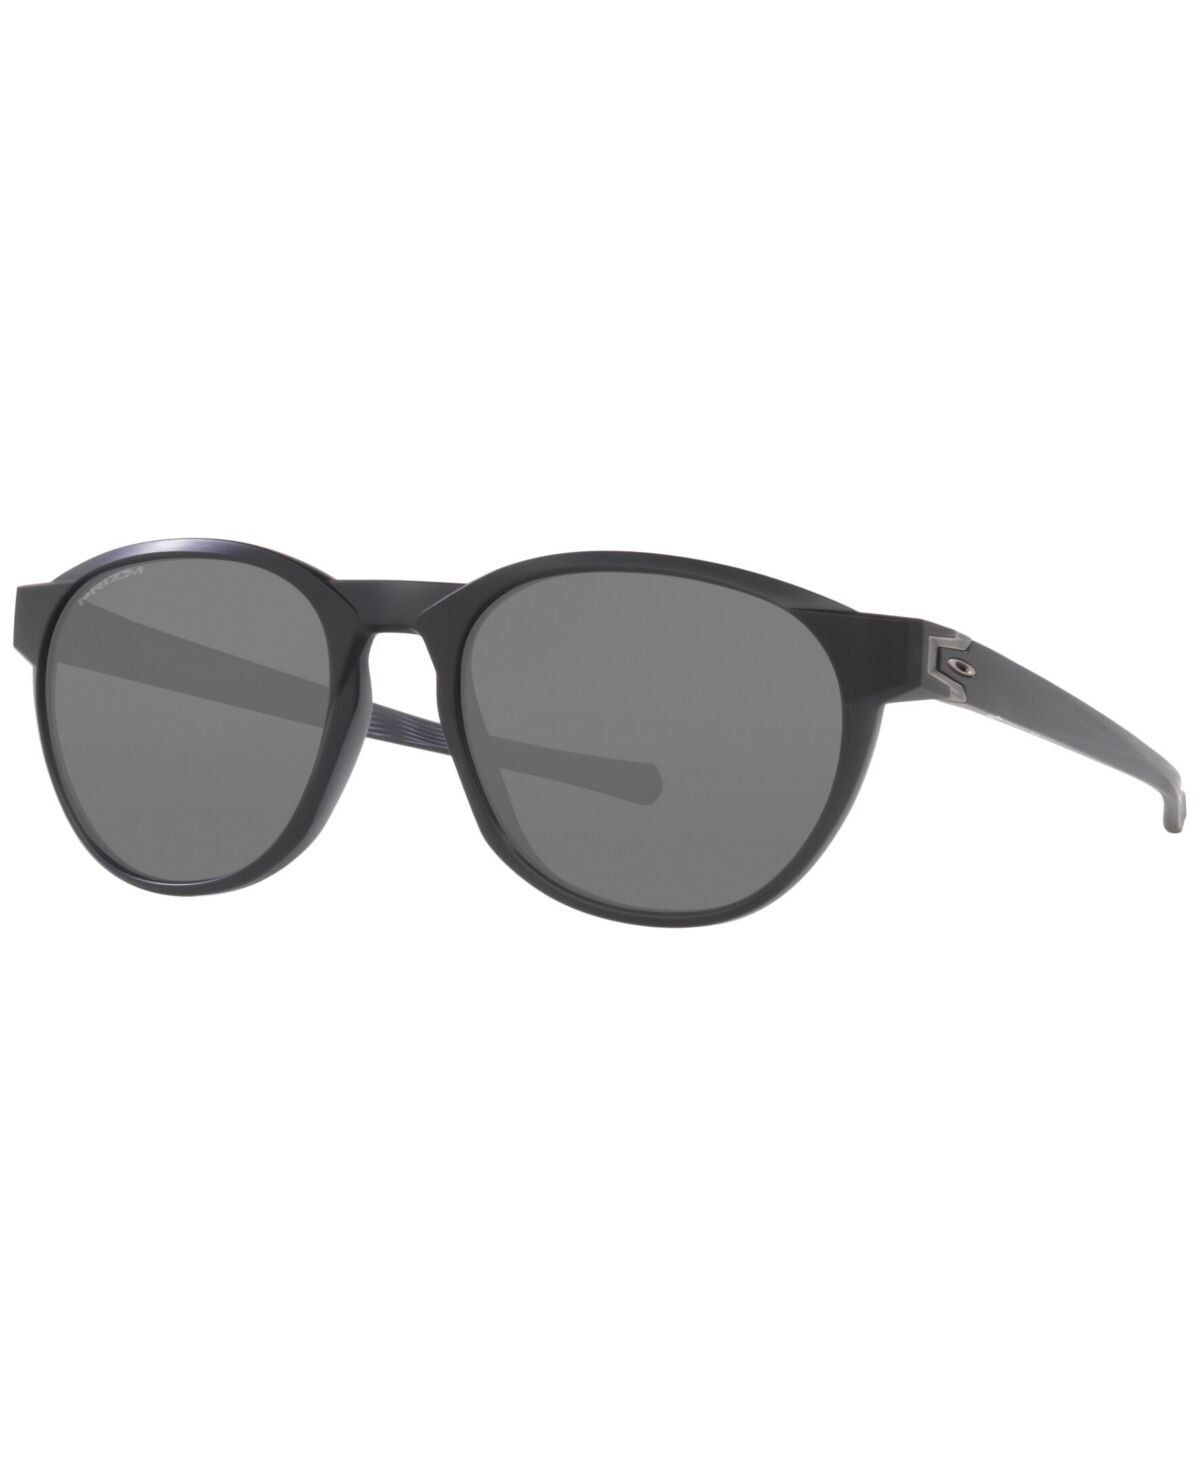 Oakley Men's Sunglasses, Reedmace 54 - Matte Black Ink